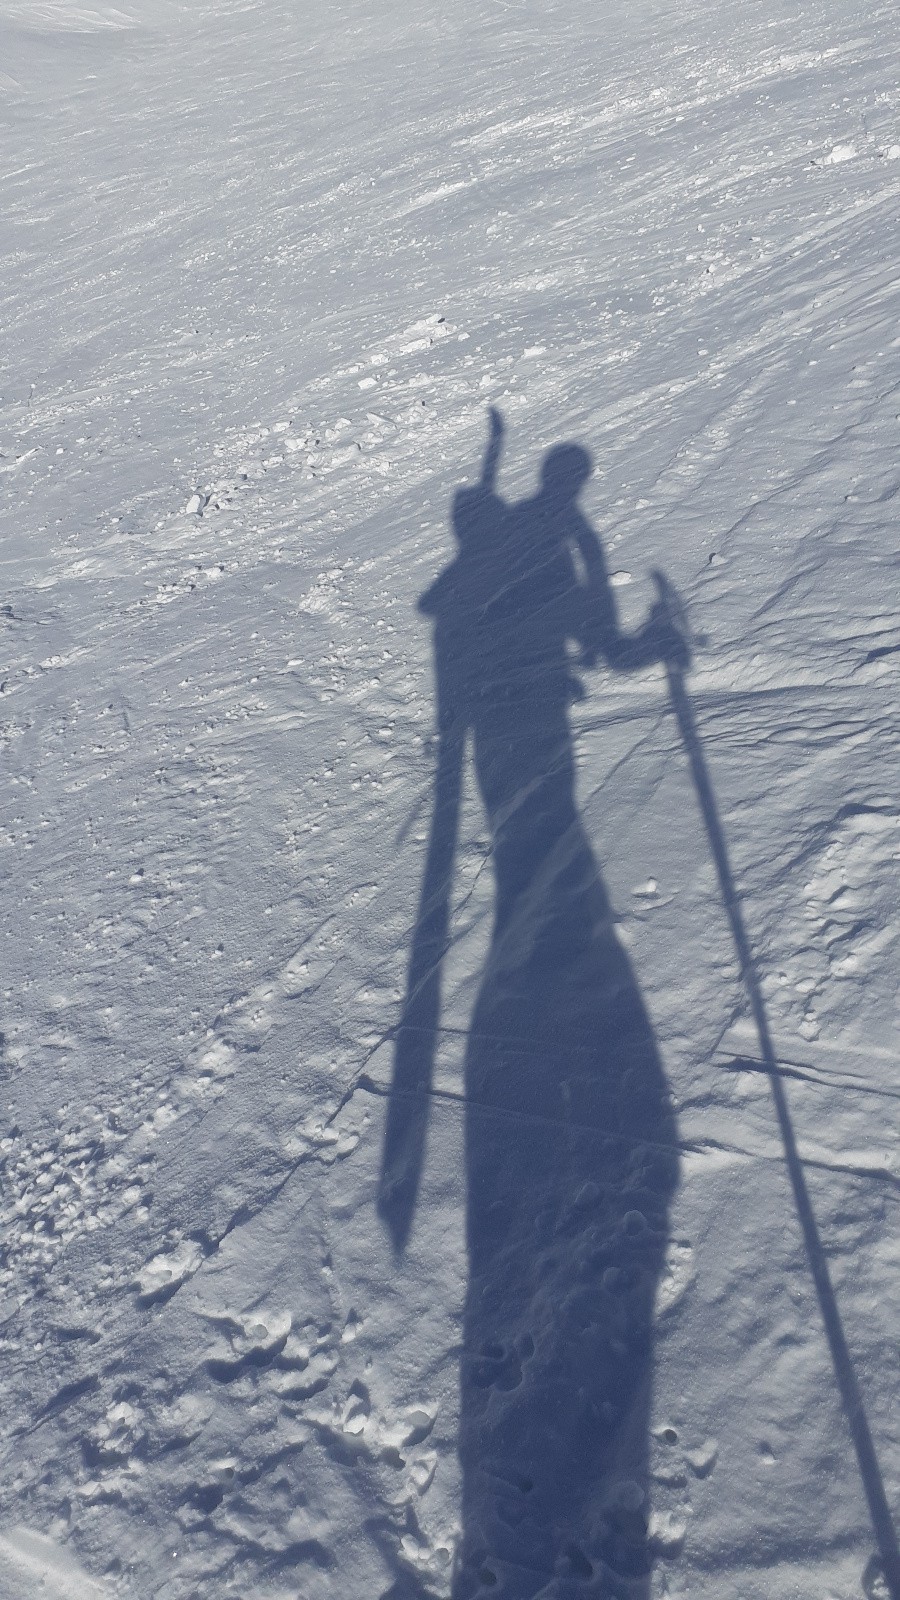 En ballade avec le ski orphelin